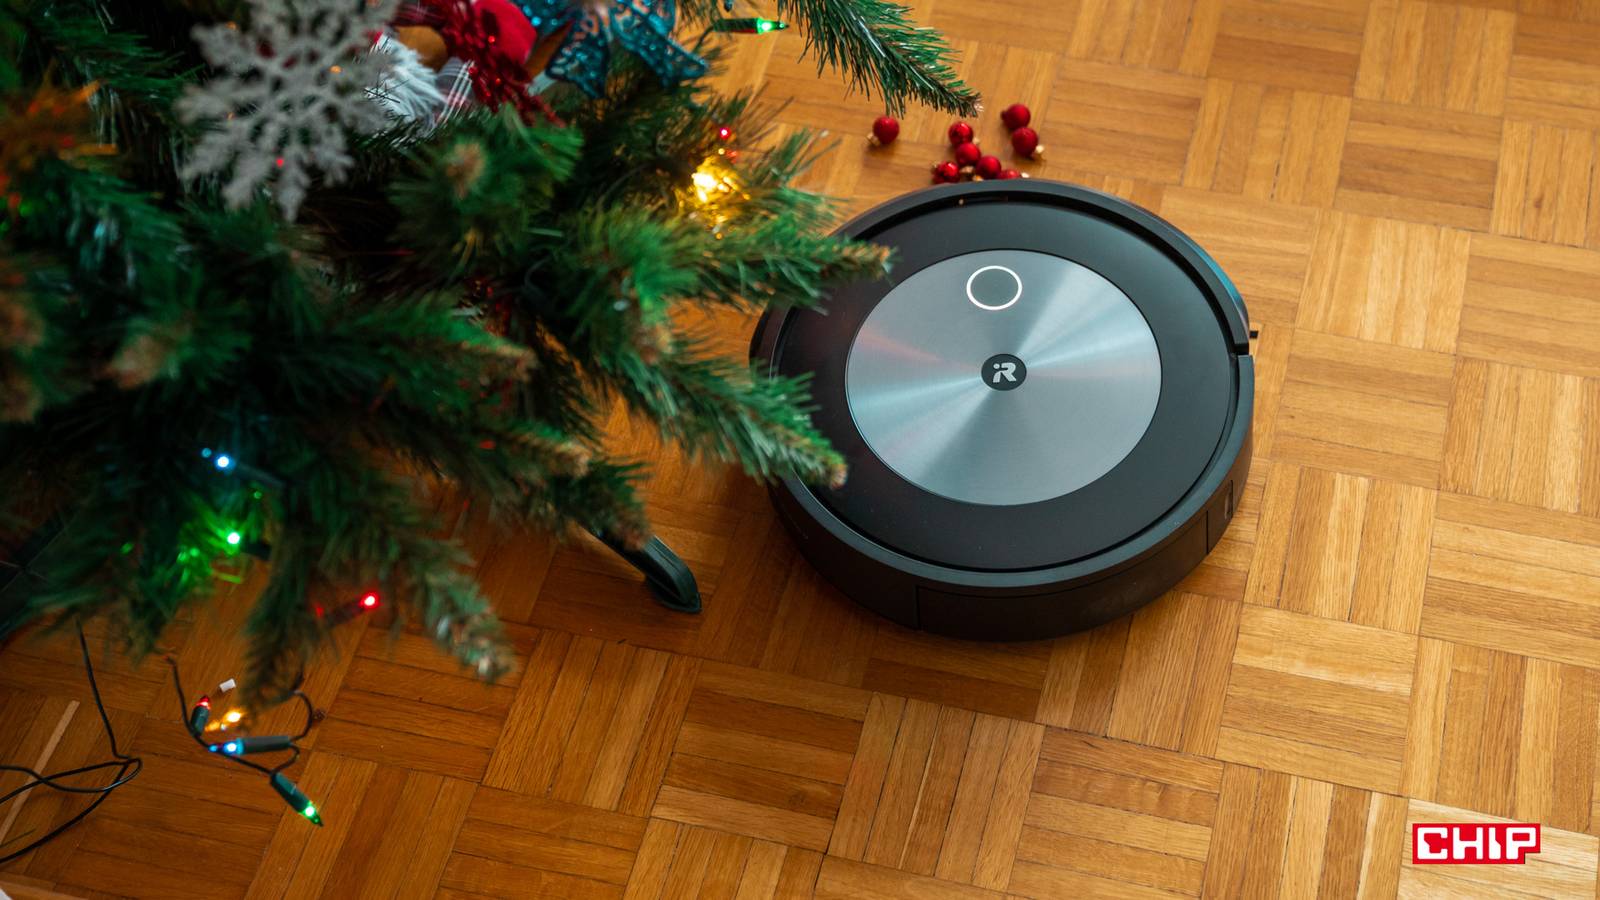 Poradnik Świąteczny 2021 – iRobot Roomba